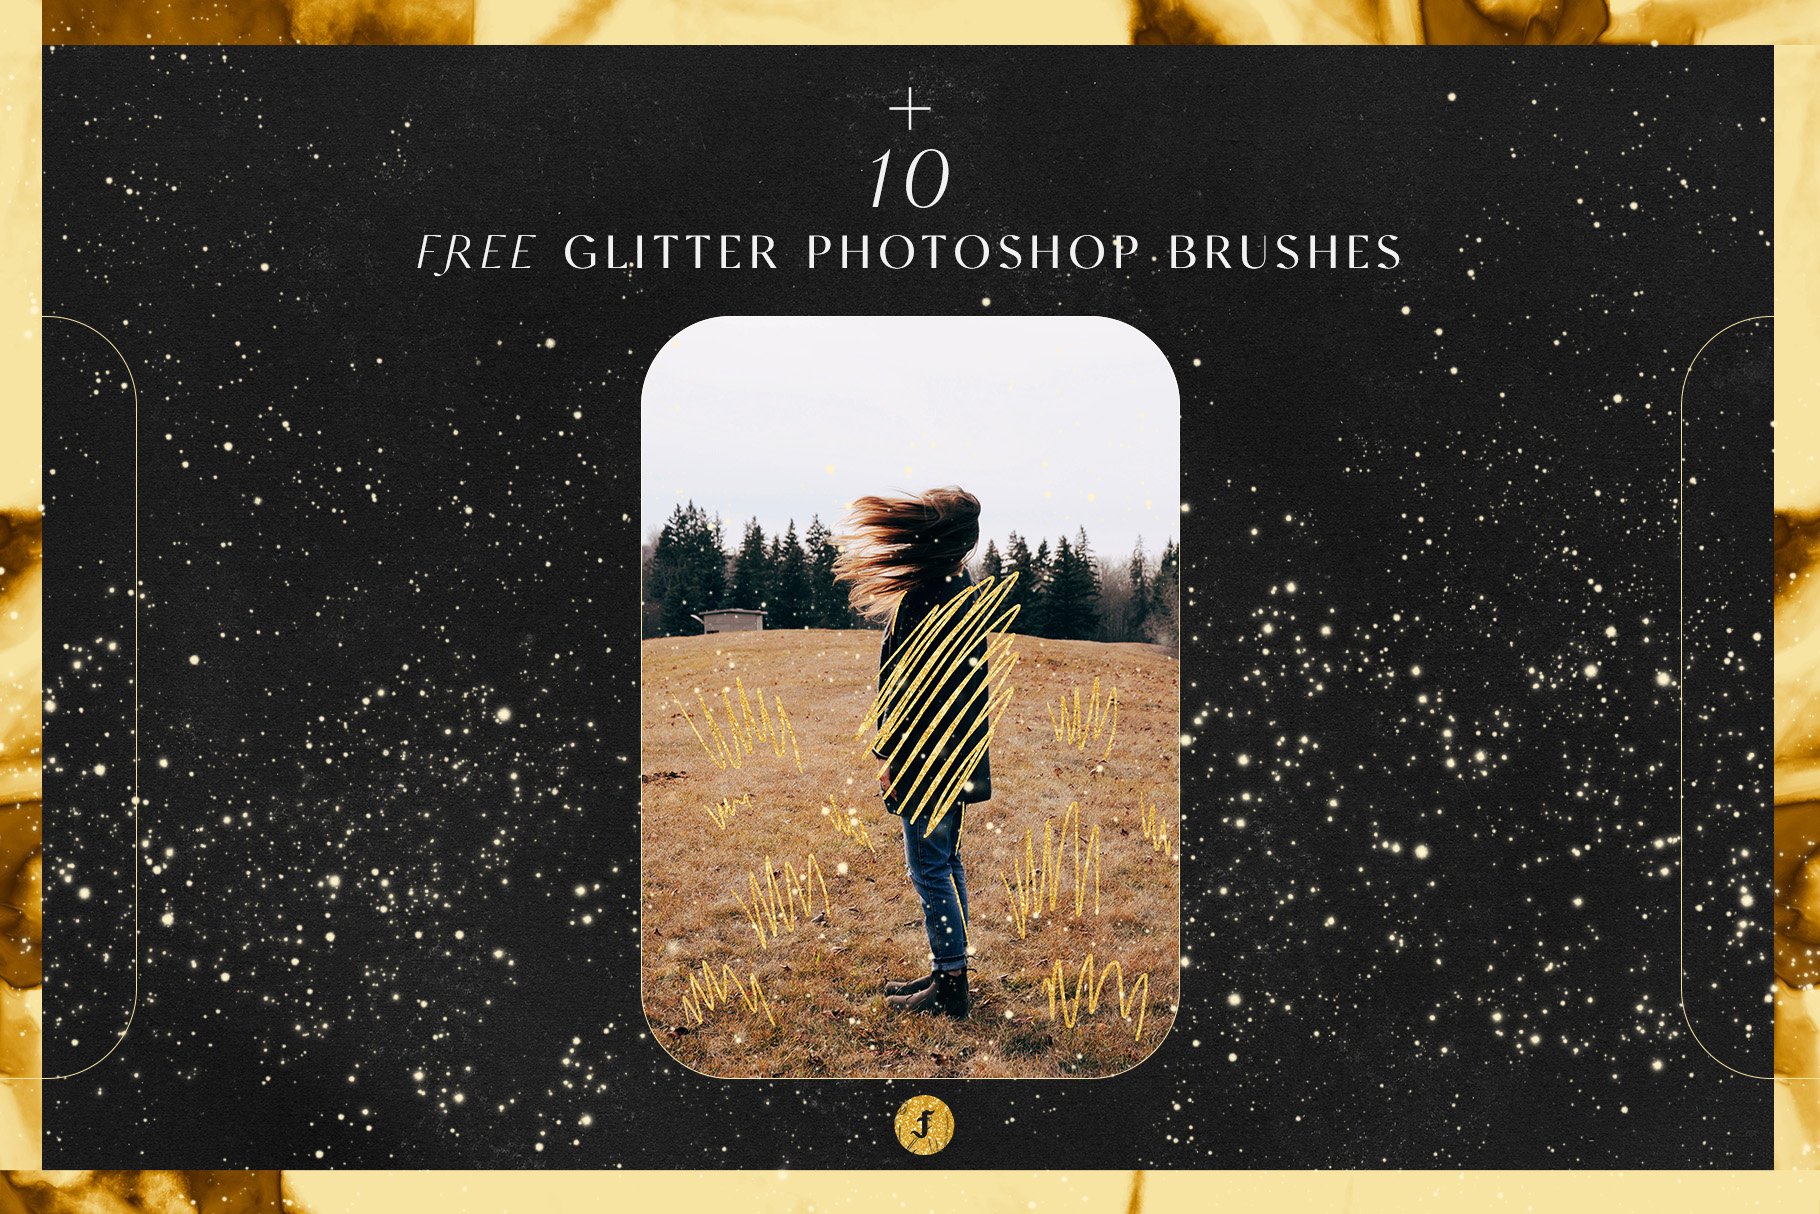 Free glitter photoshop brushes.